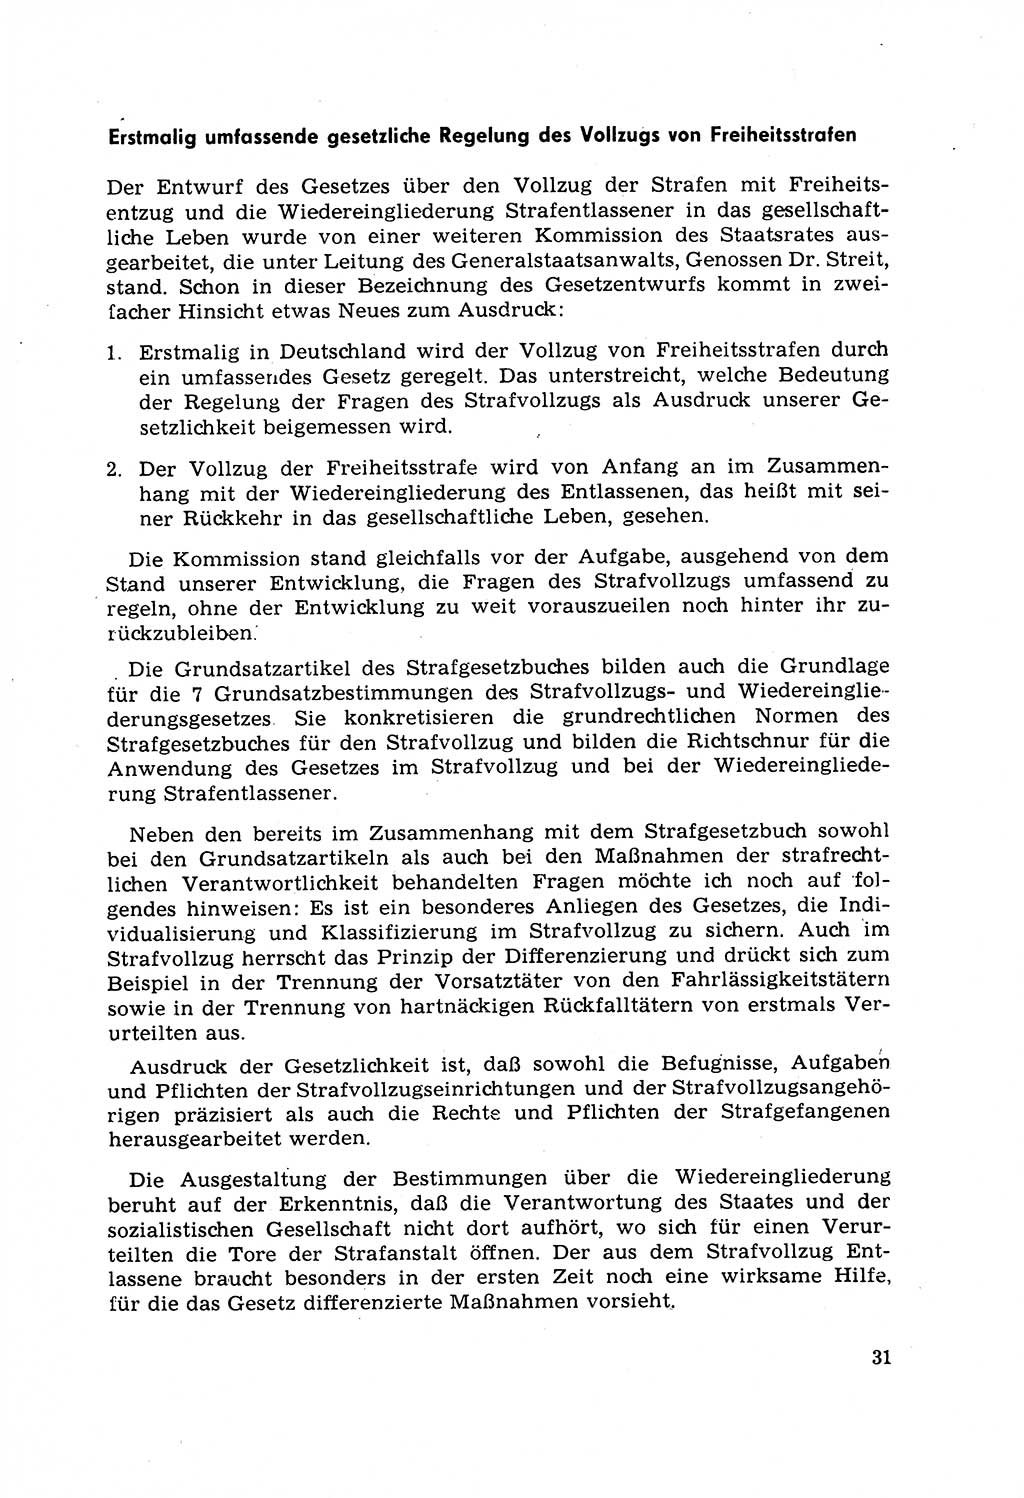 Strafrecht [Deutsche Demokratische Republik (DDR)] 1968, Seite 31 (Strafr. DDR 1968, S. 31)